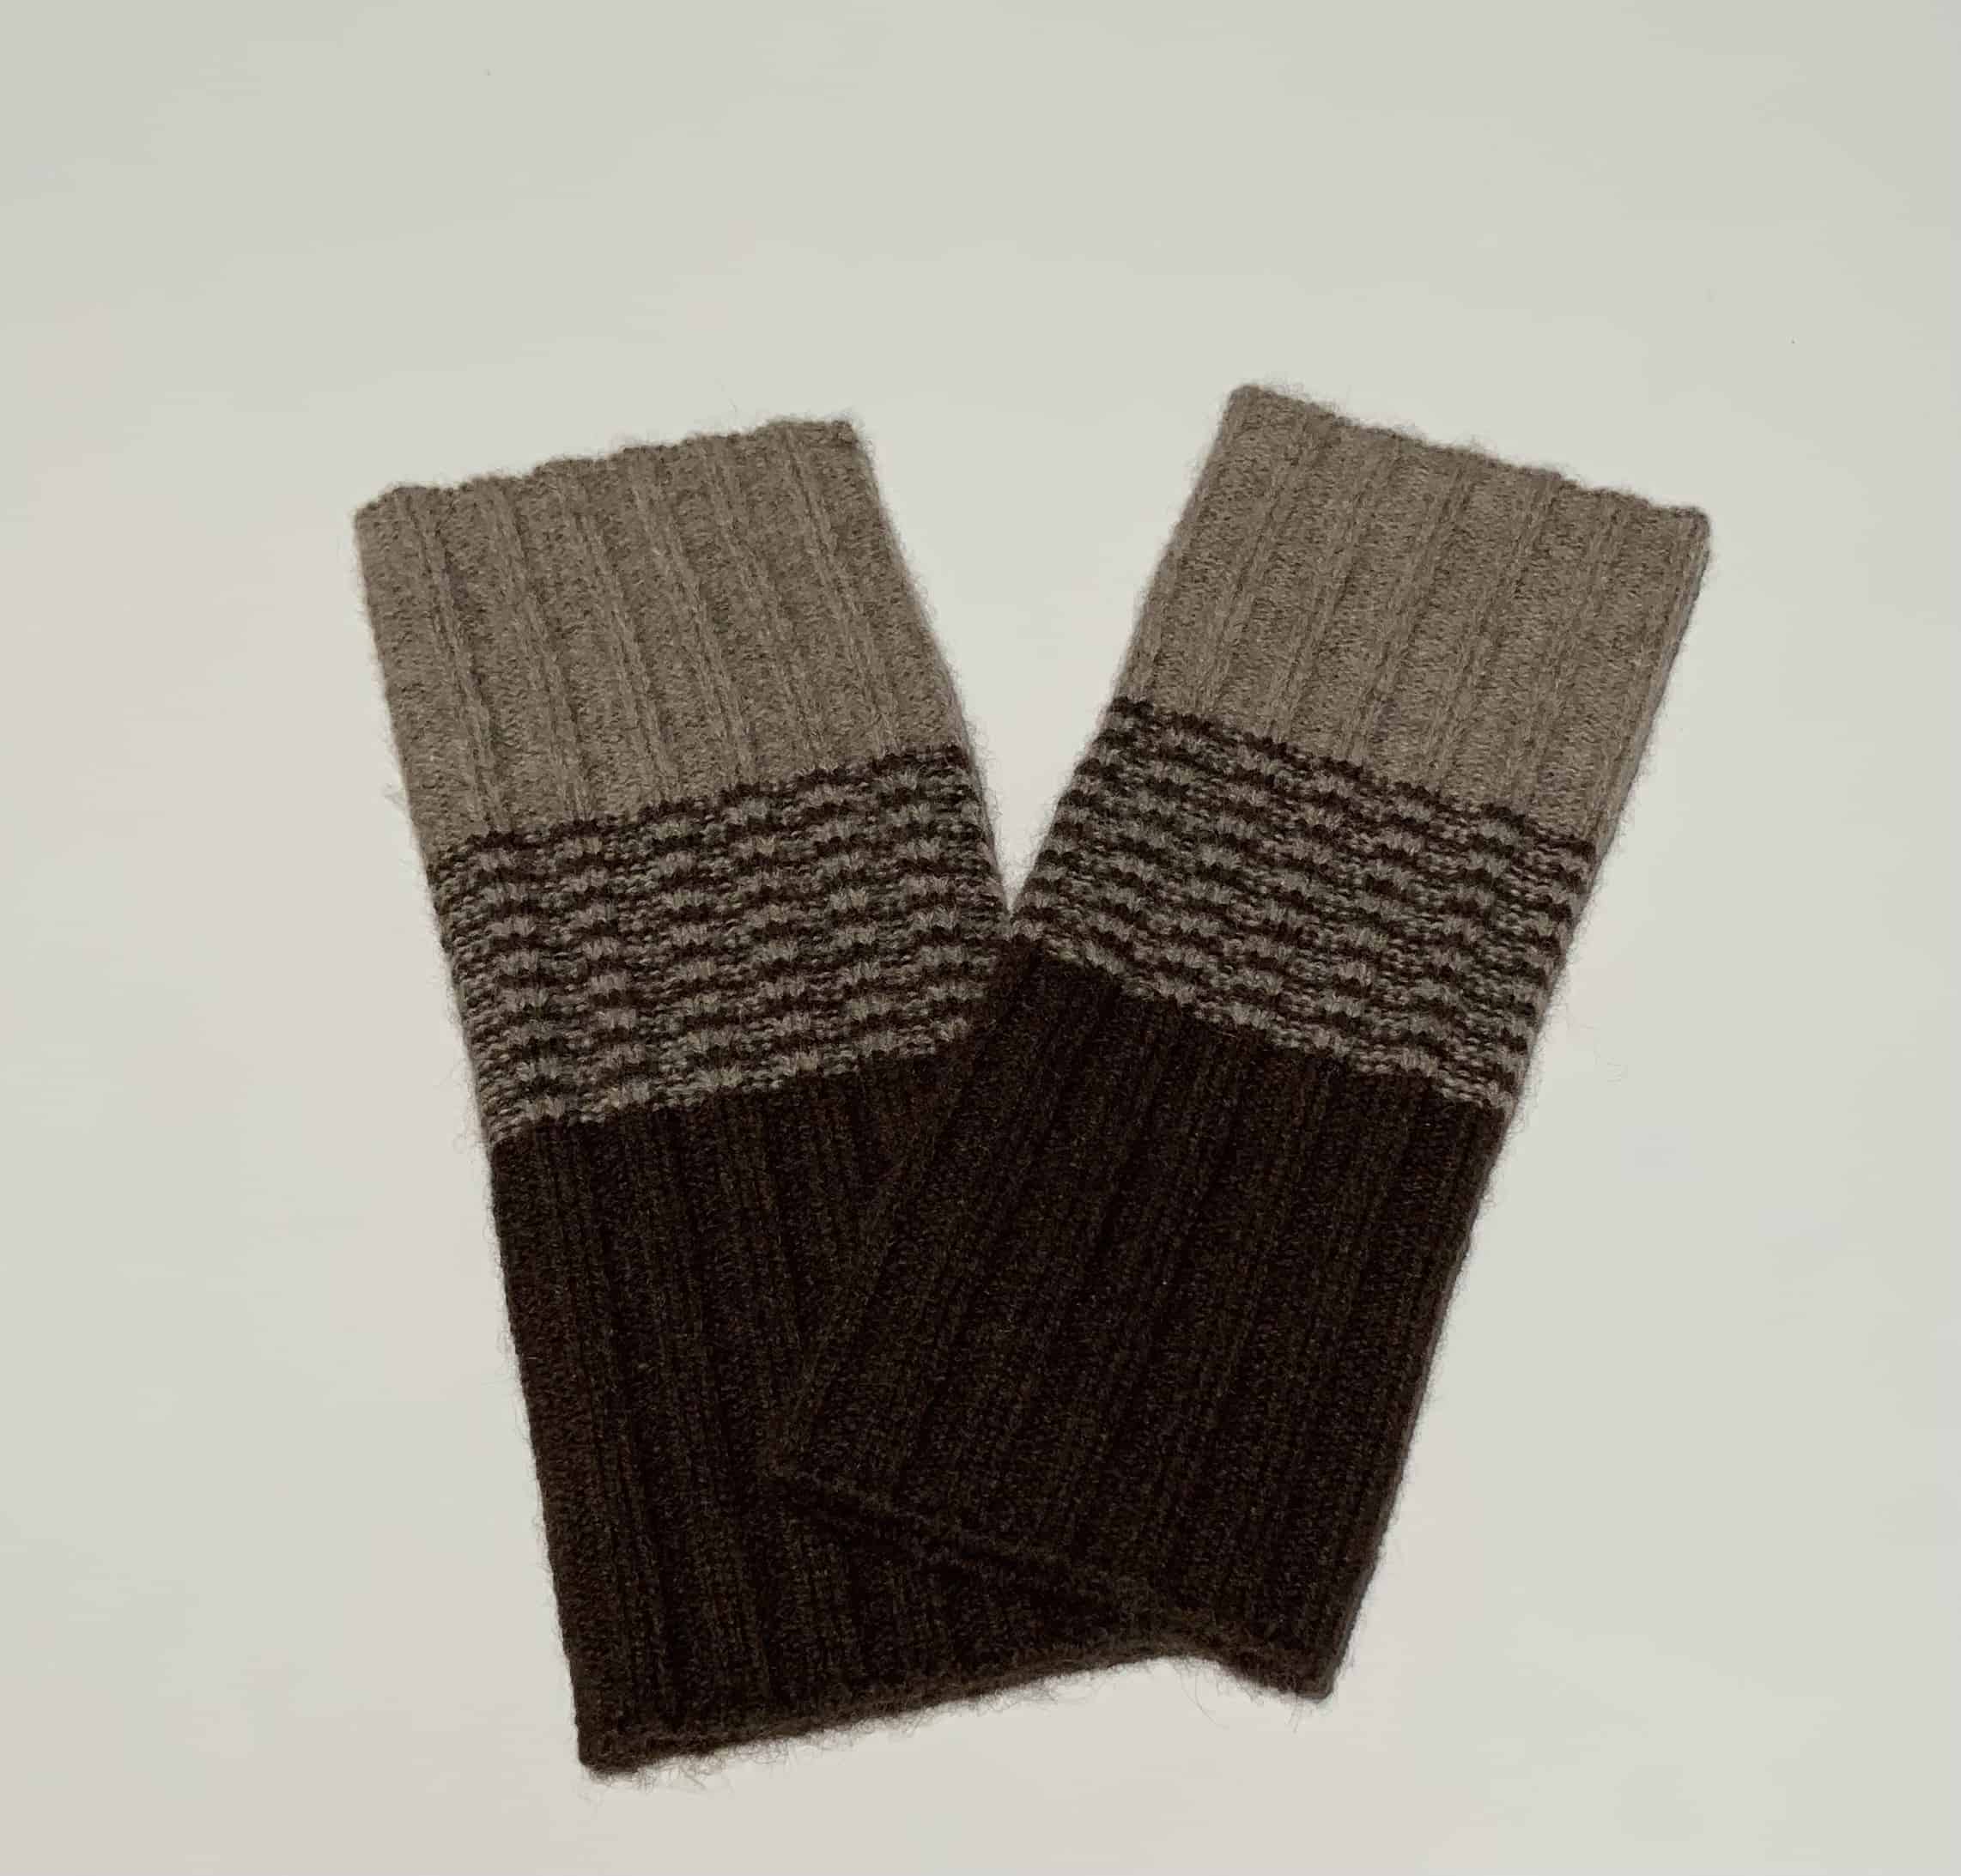 Yak wool gloves